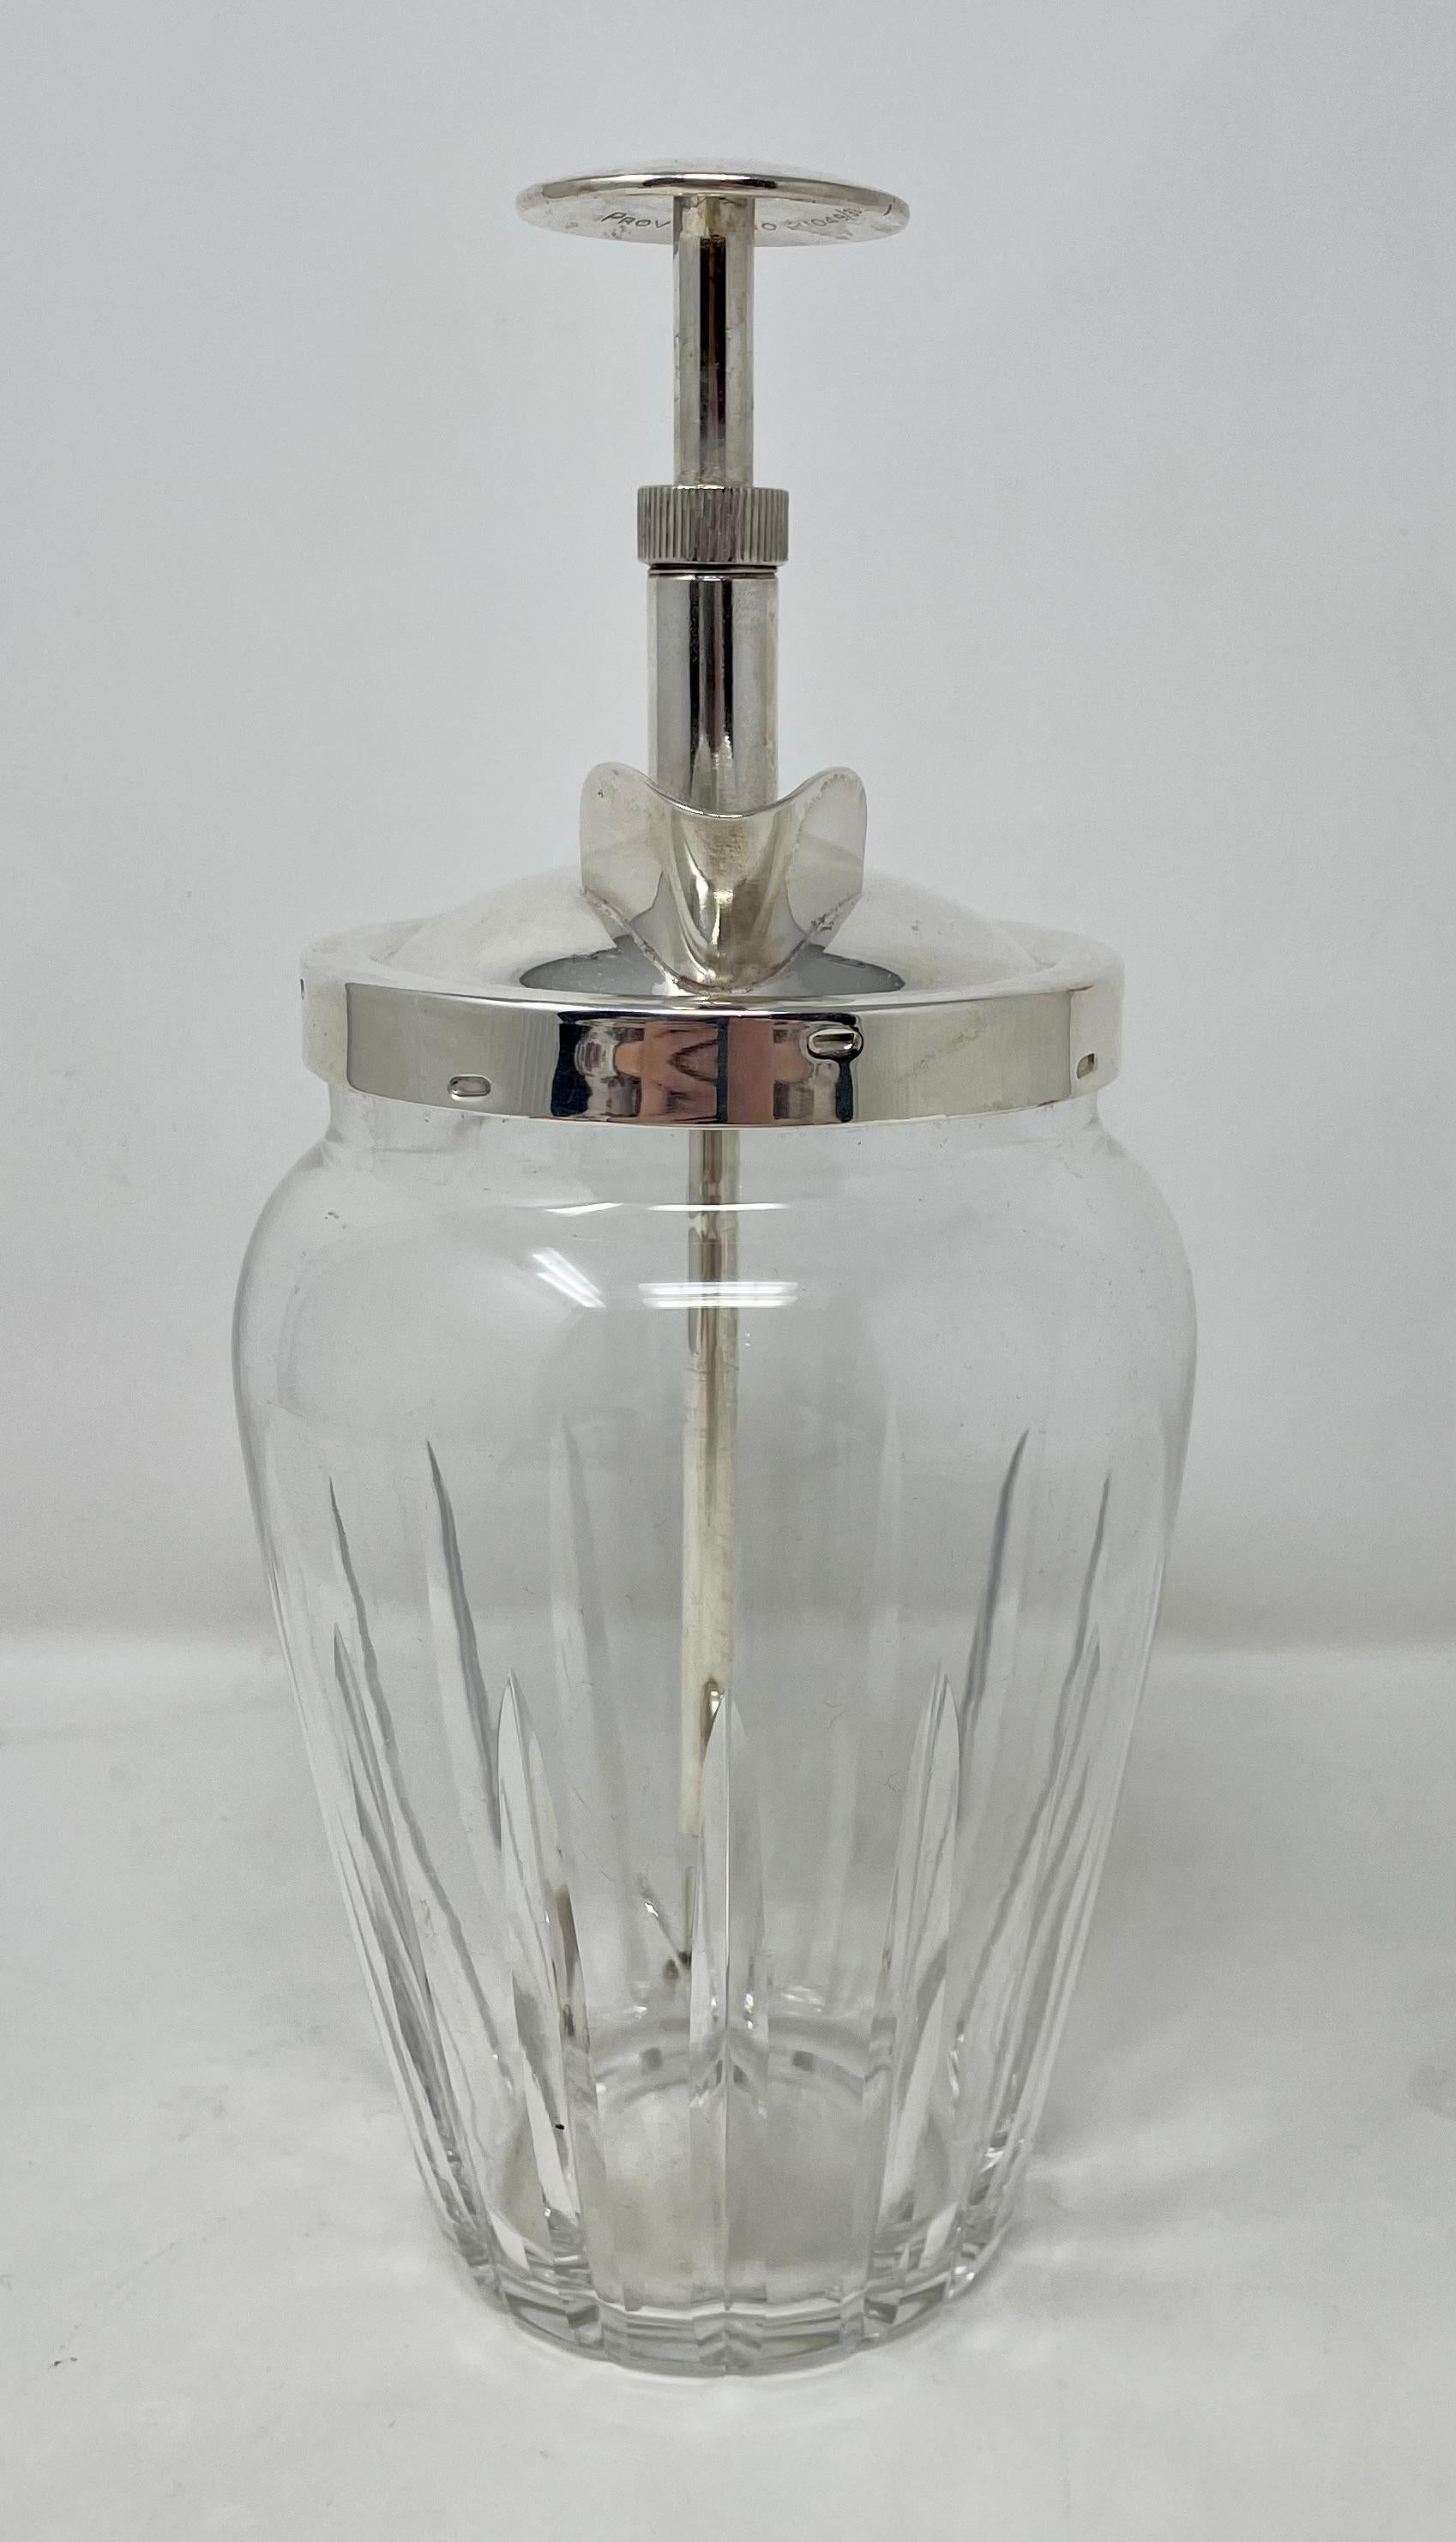 Nachlass Art Deco versilbert & geschliffenes Kristall Schnellmixer-Cocktailshaker, ca. 1930.